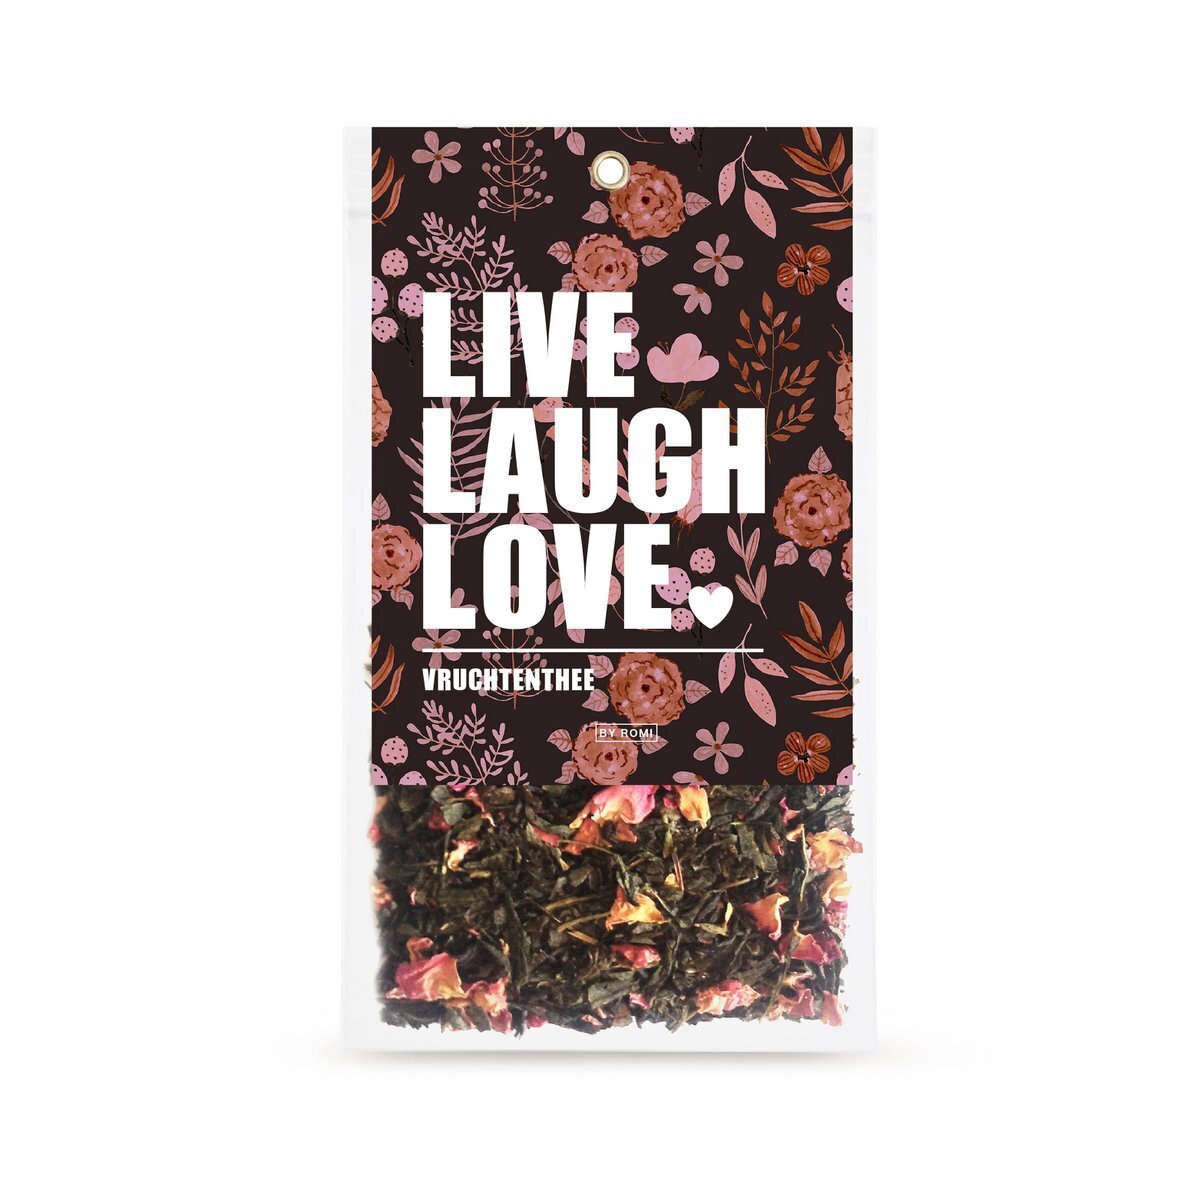 Vruchtenthee in zakje / Live laugh love